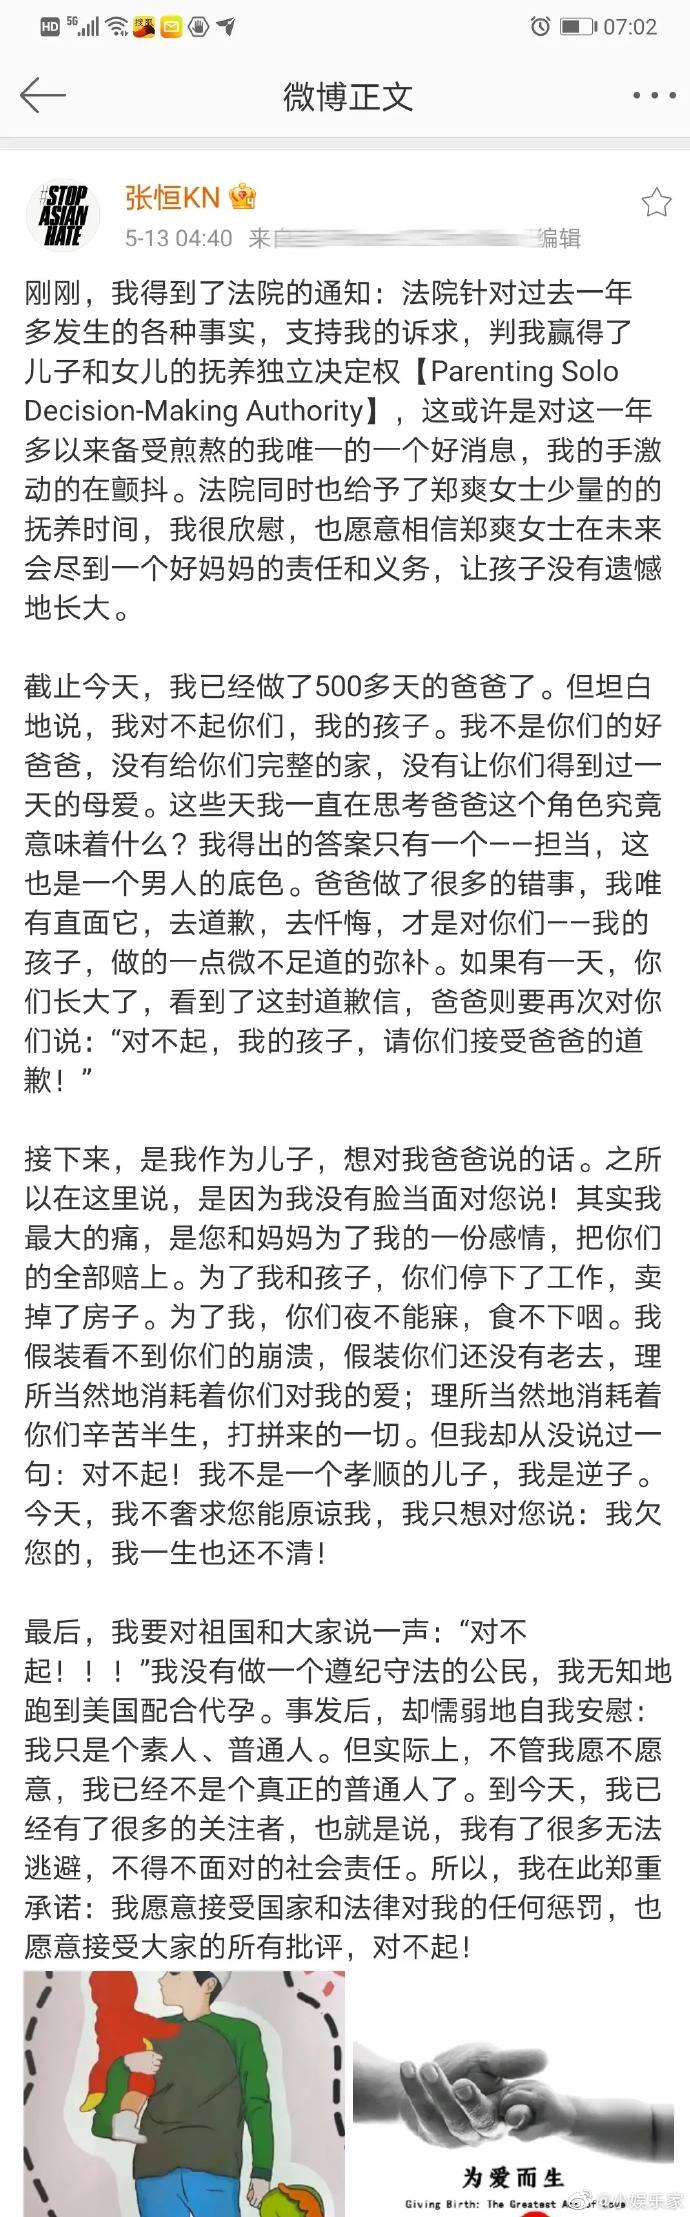 Post của Trương Hằng trên Weibo (Nguồn: Internet)